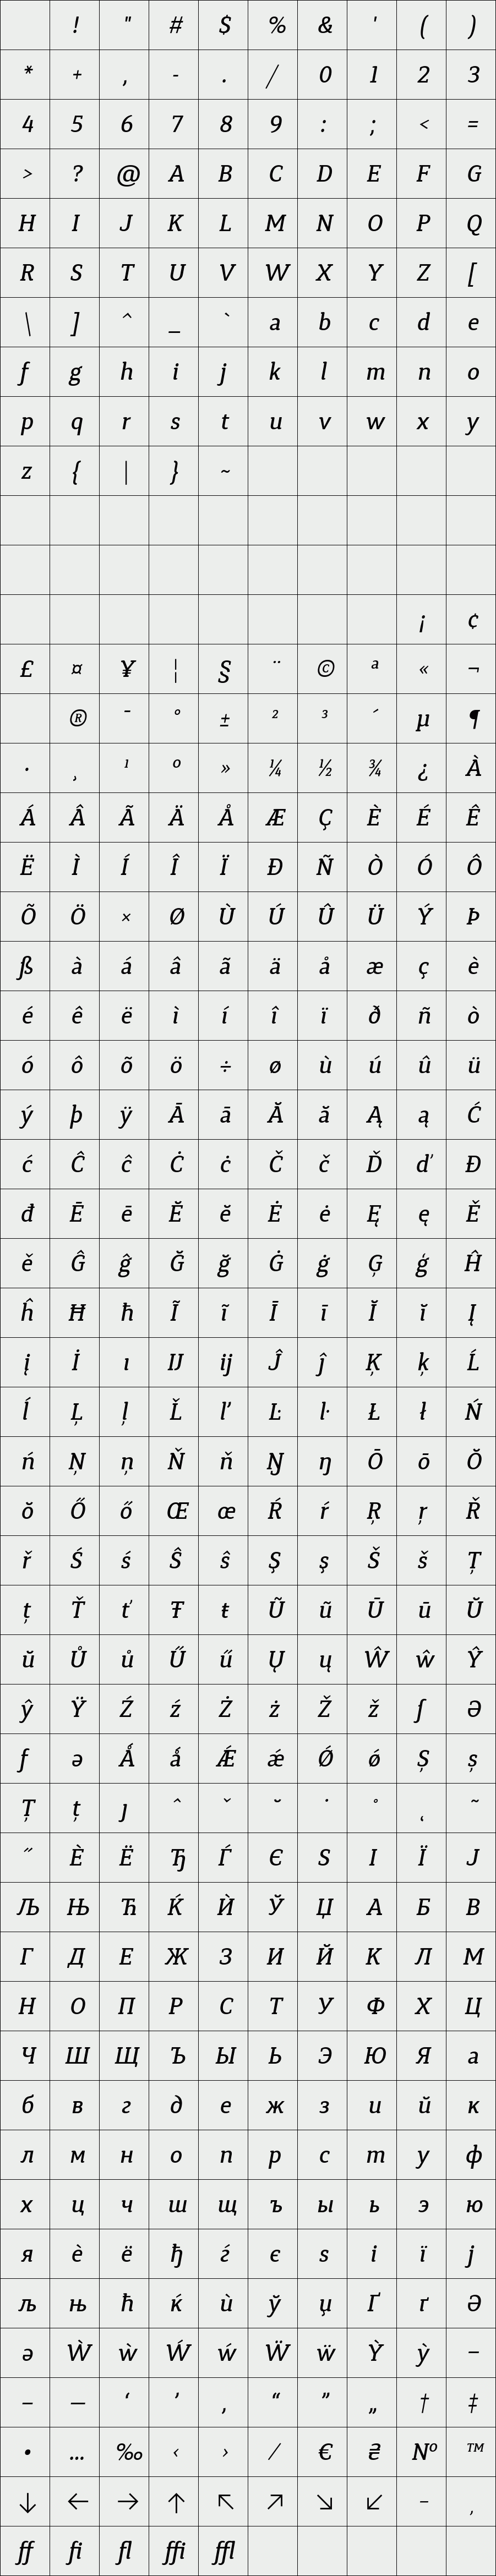 Synerga Pro Medium Italic